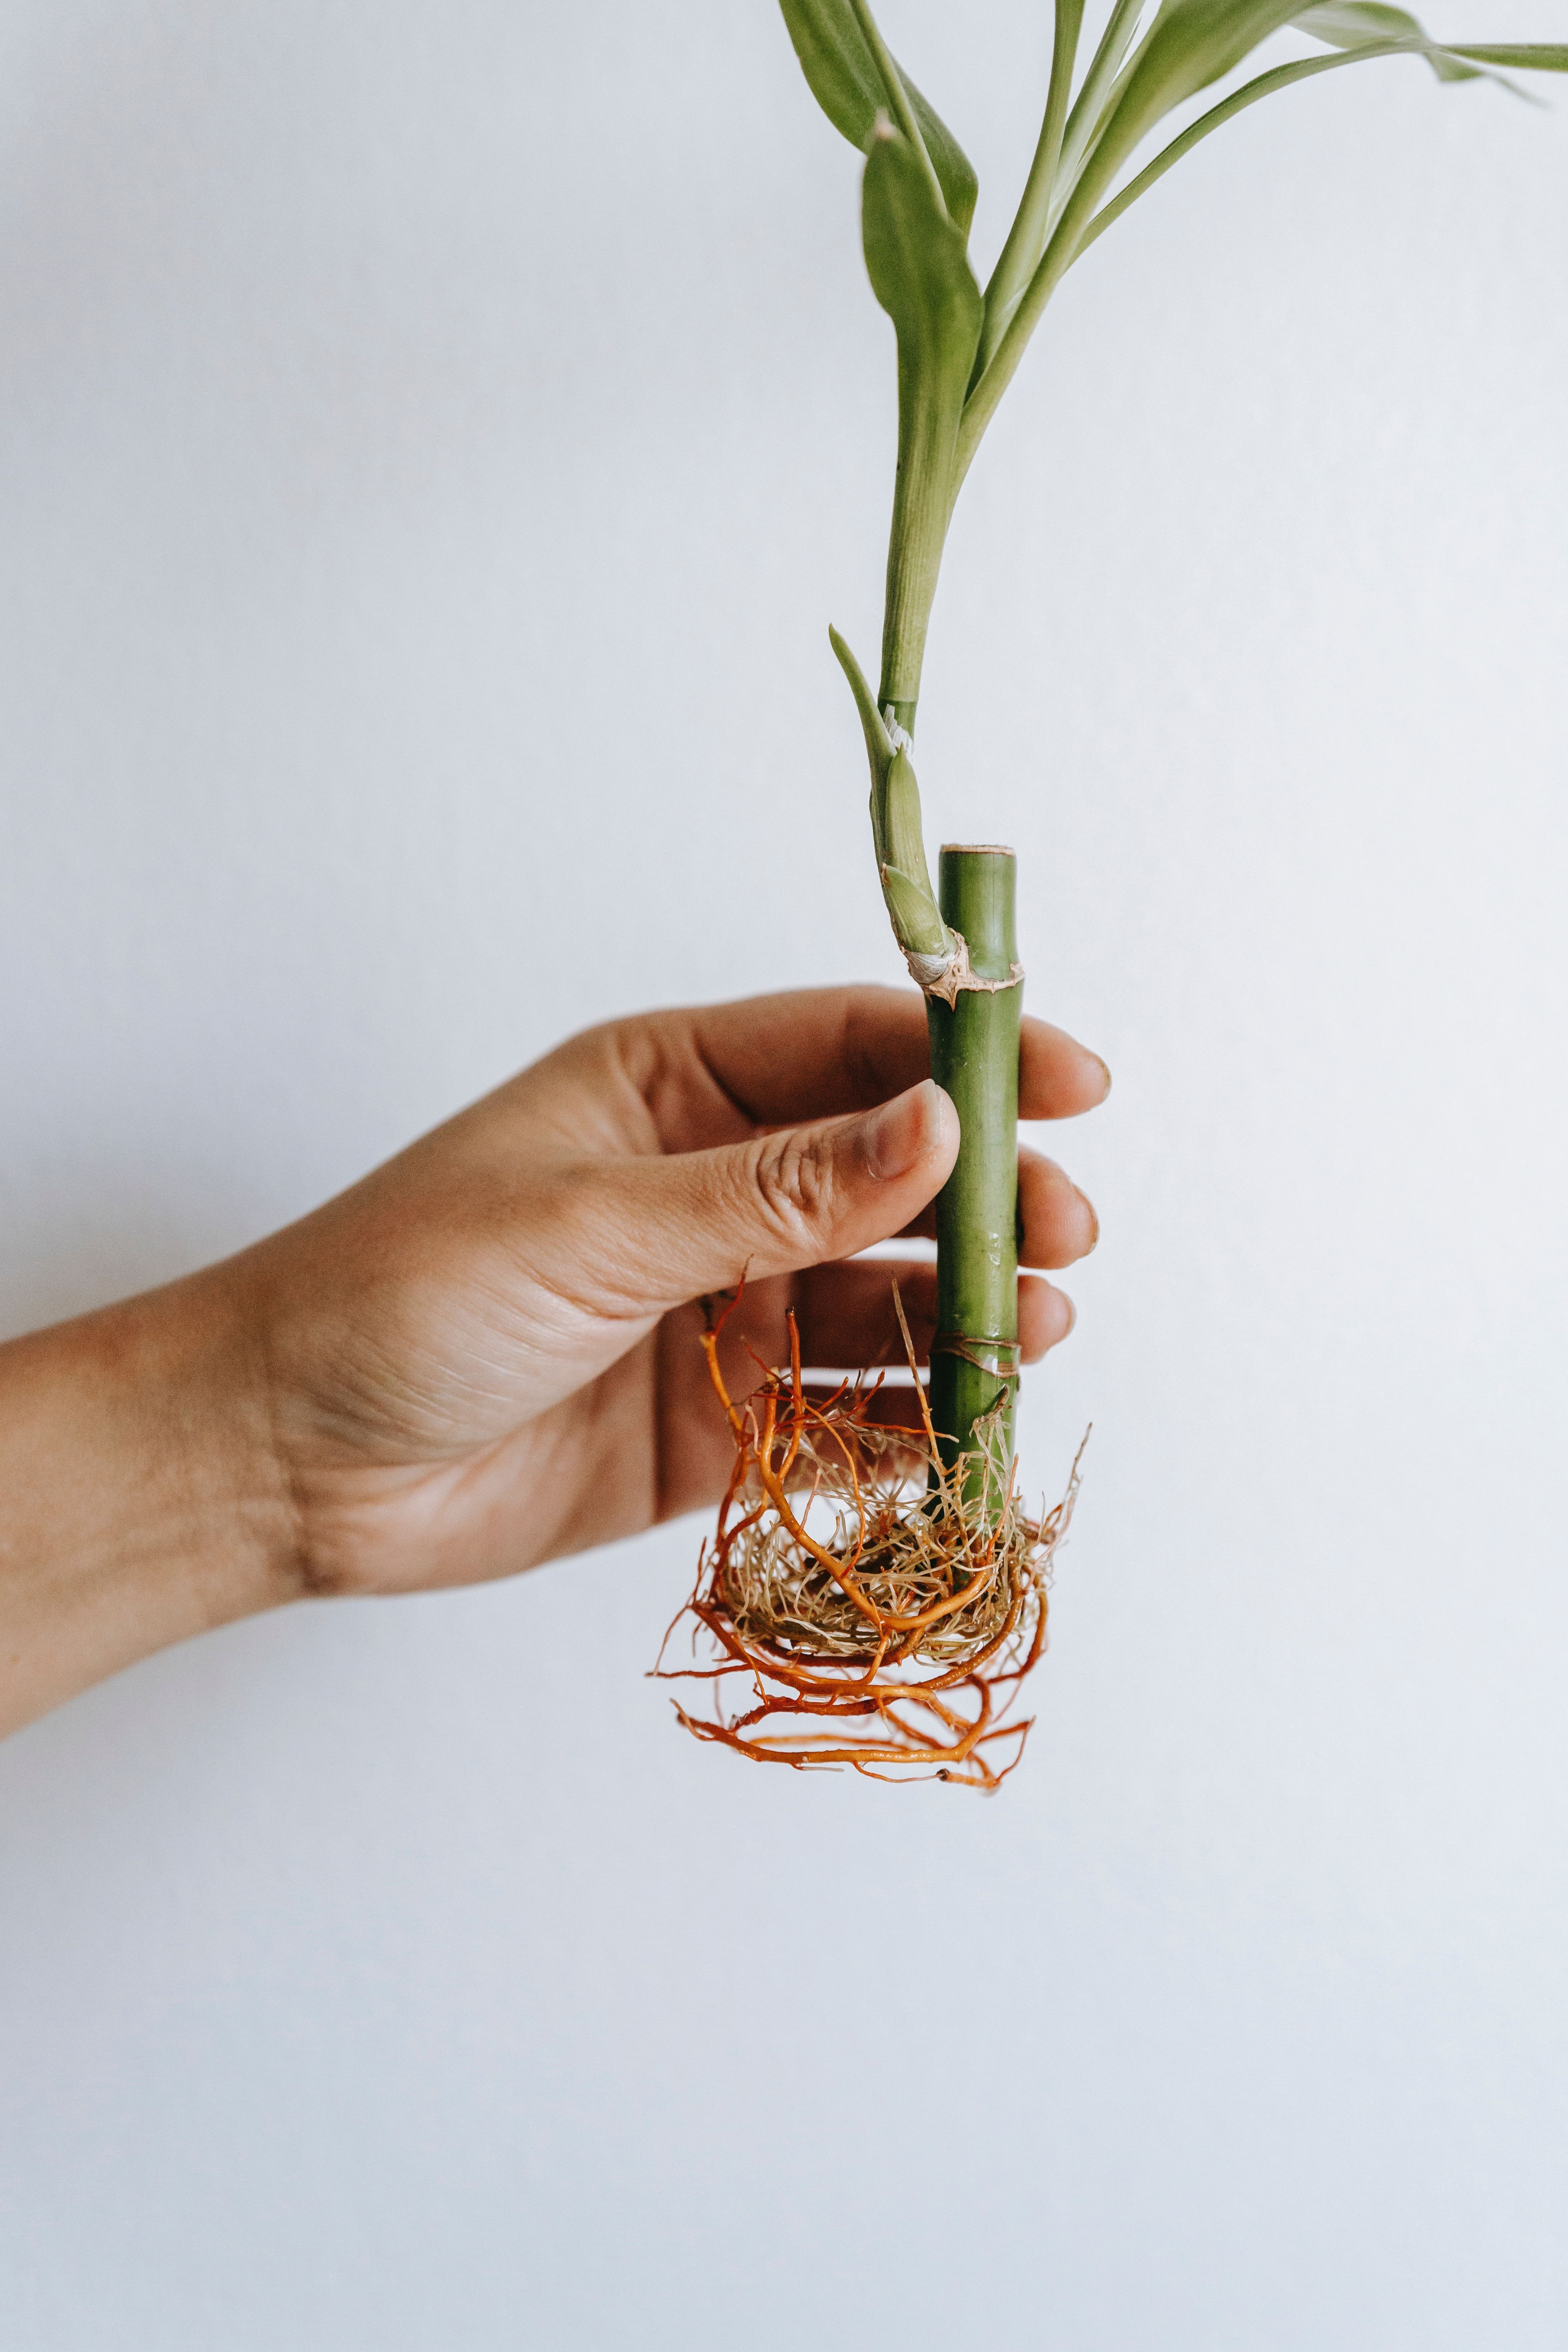 Bambu Çiçeği Bakımı - Şans Bambusu Bakımı Nasıl Yapılır?